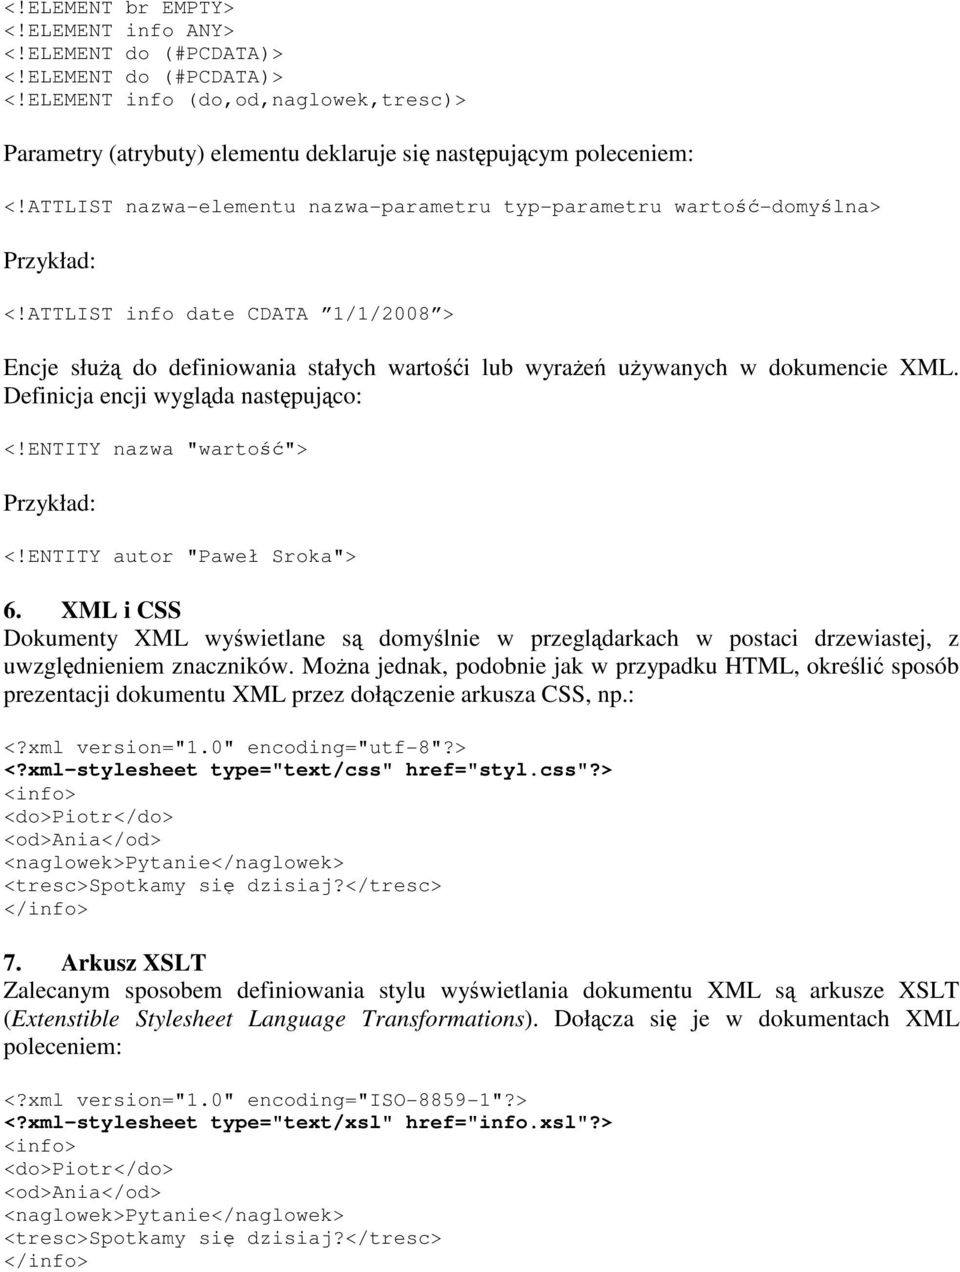 ATTLIST info date CDATA 1/1/2008 > Encje służą do definiowania stałych wartośći lub wyrażeń używanych w dokumencie XML. Definicja encji wygląda następująco: <!ENTITY nazwa "wartość"> Przykład: <!